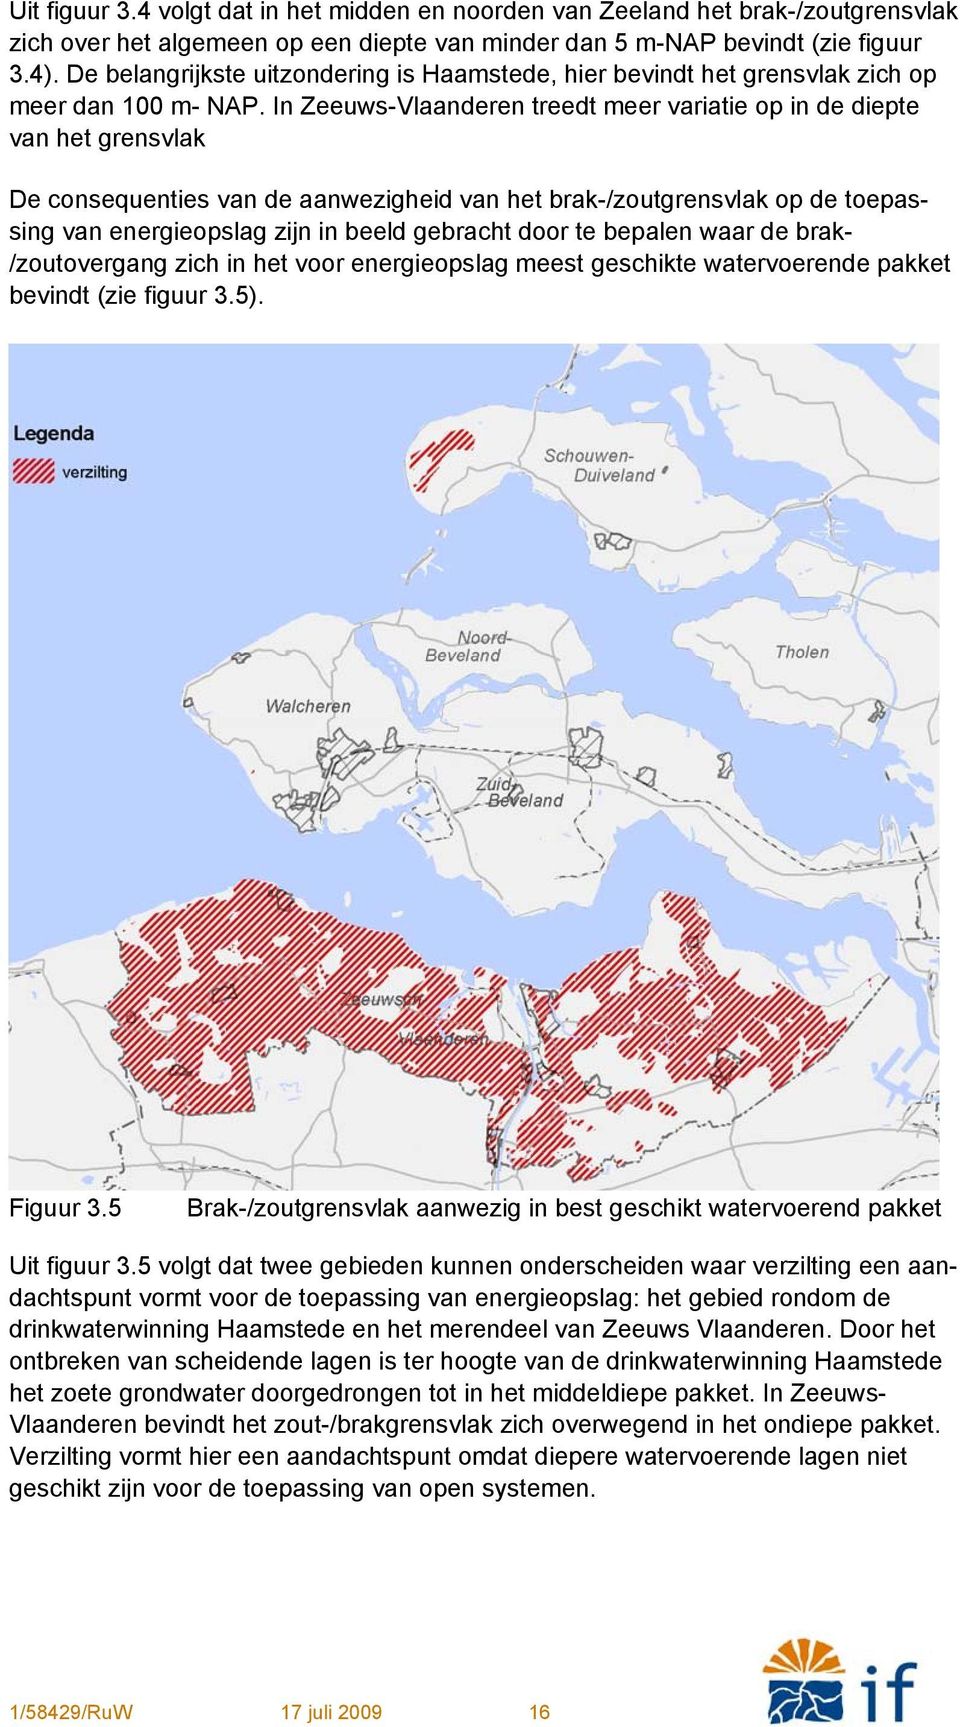 In Zeeuws-Vlaanderen treedt meer variatie op in de diepte van het grensvlak De consequenties van de aanwezigheid van het brak-/zoutgrensvlak op de toepassing van energieopslag zijn in beeld gebracht